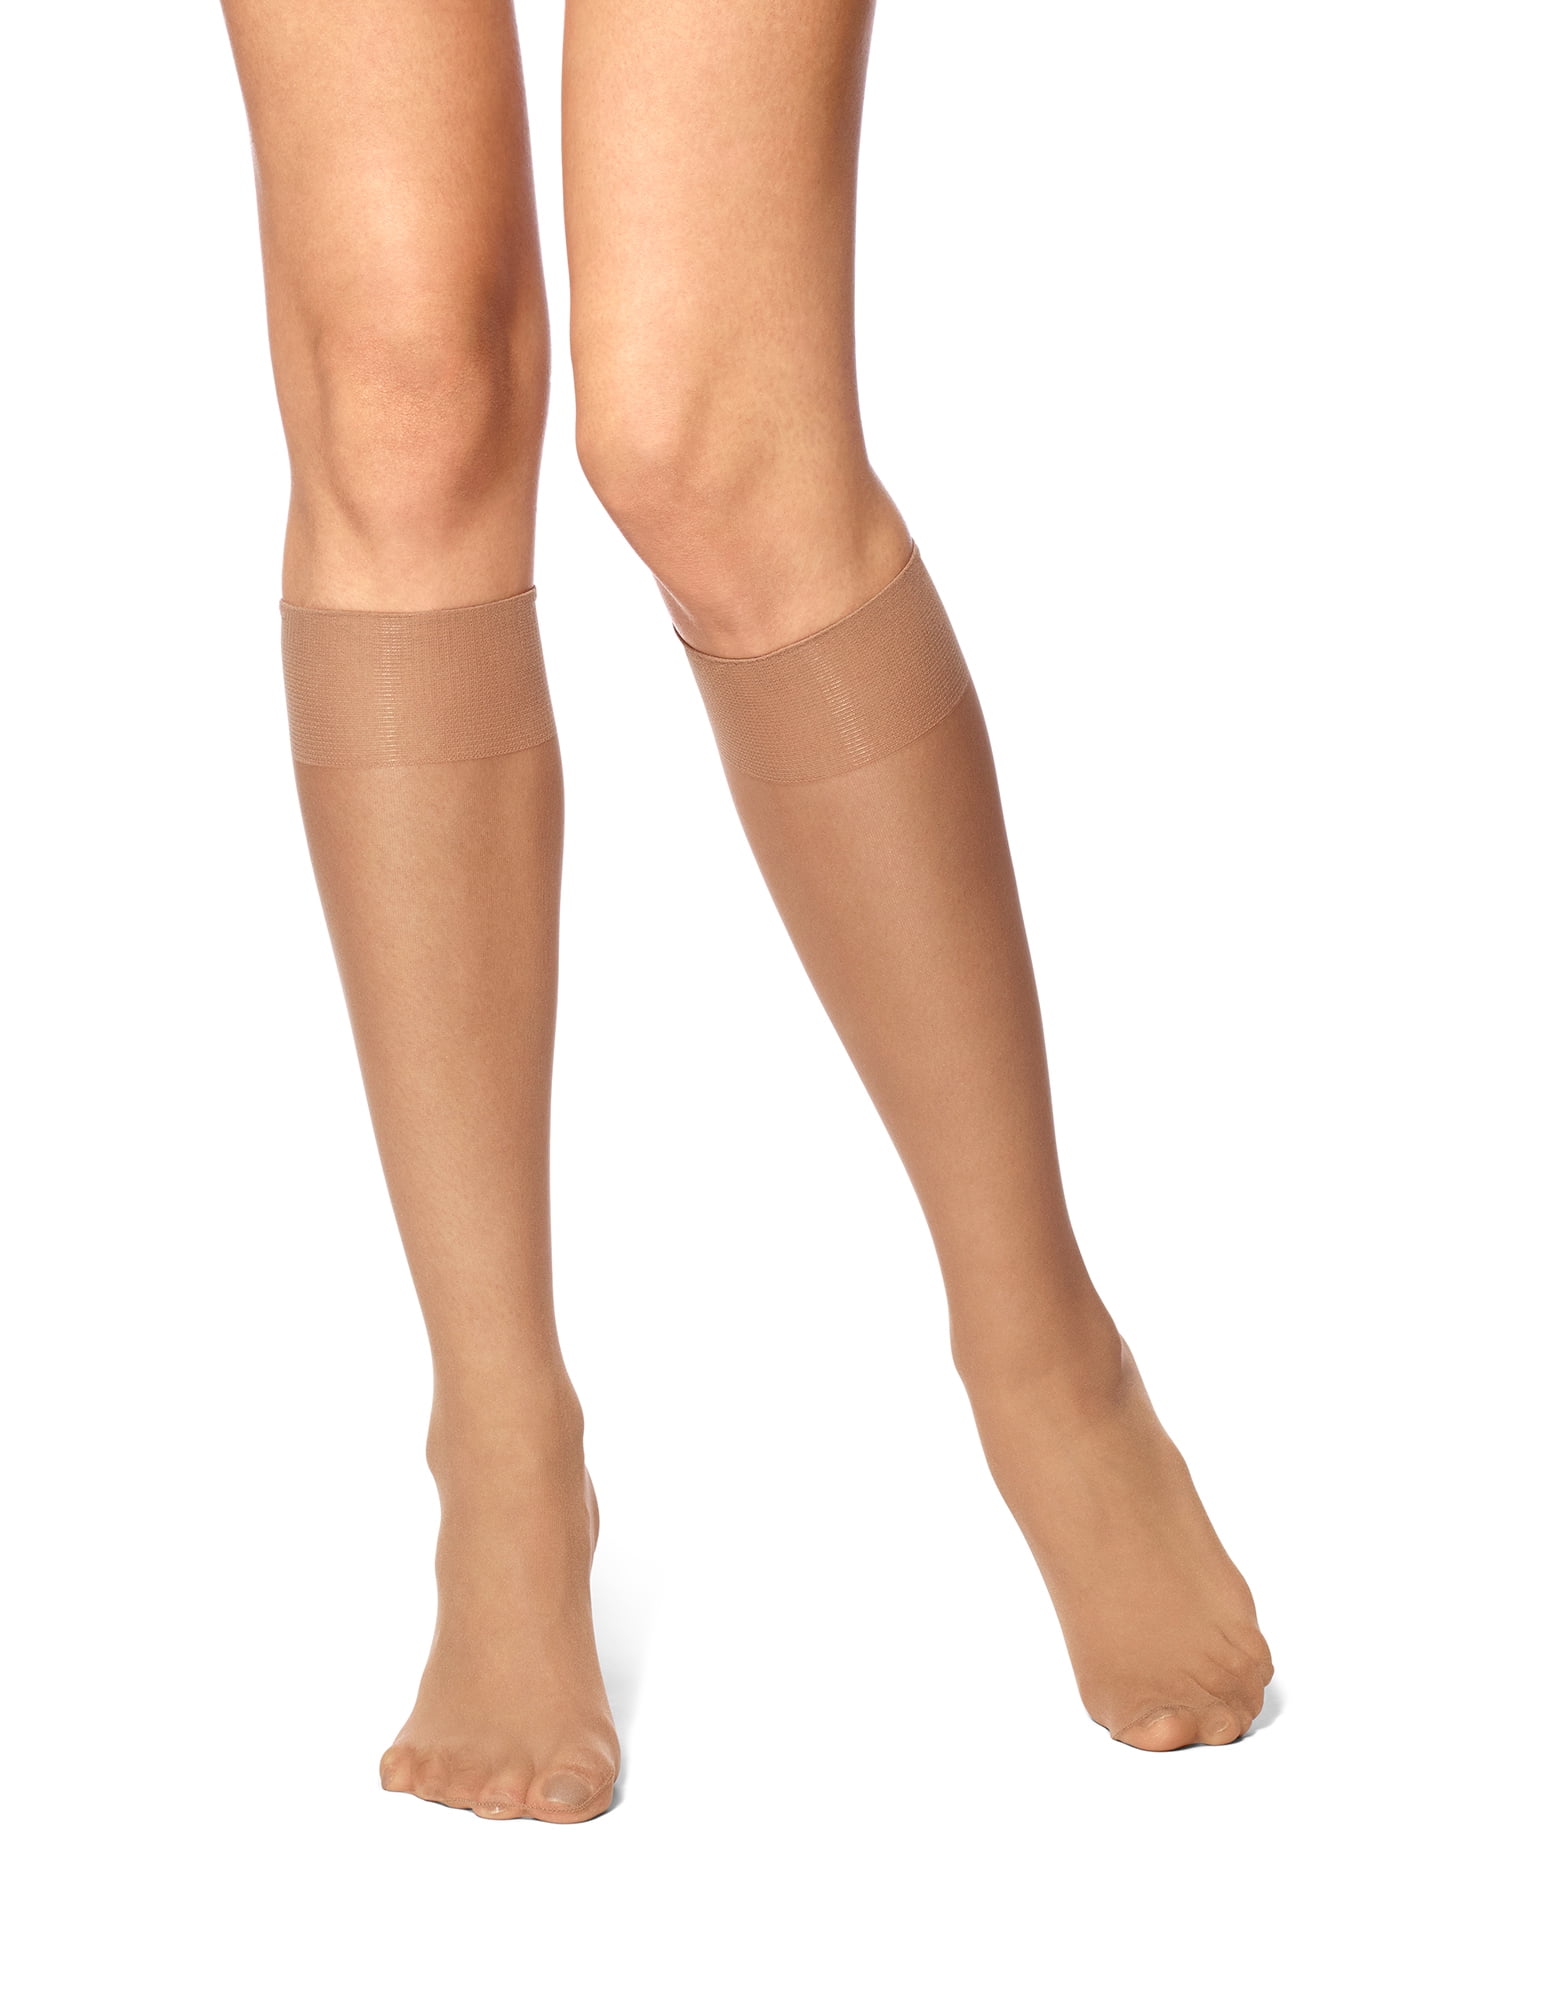 Women's Knee High Hosiery